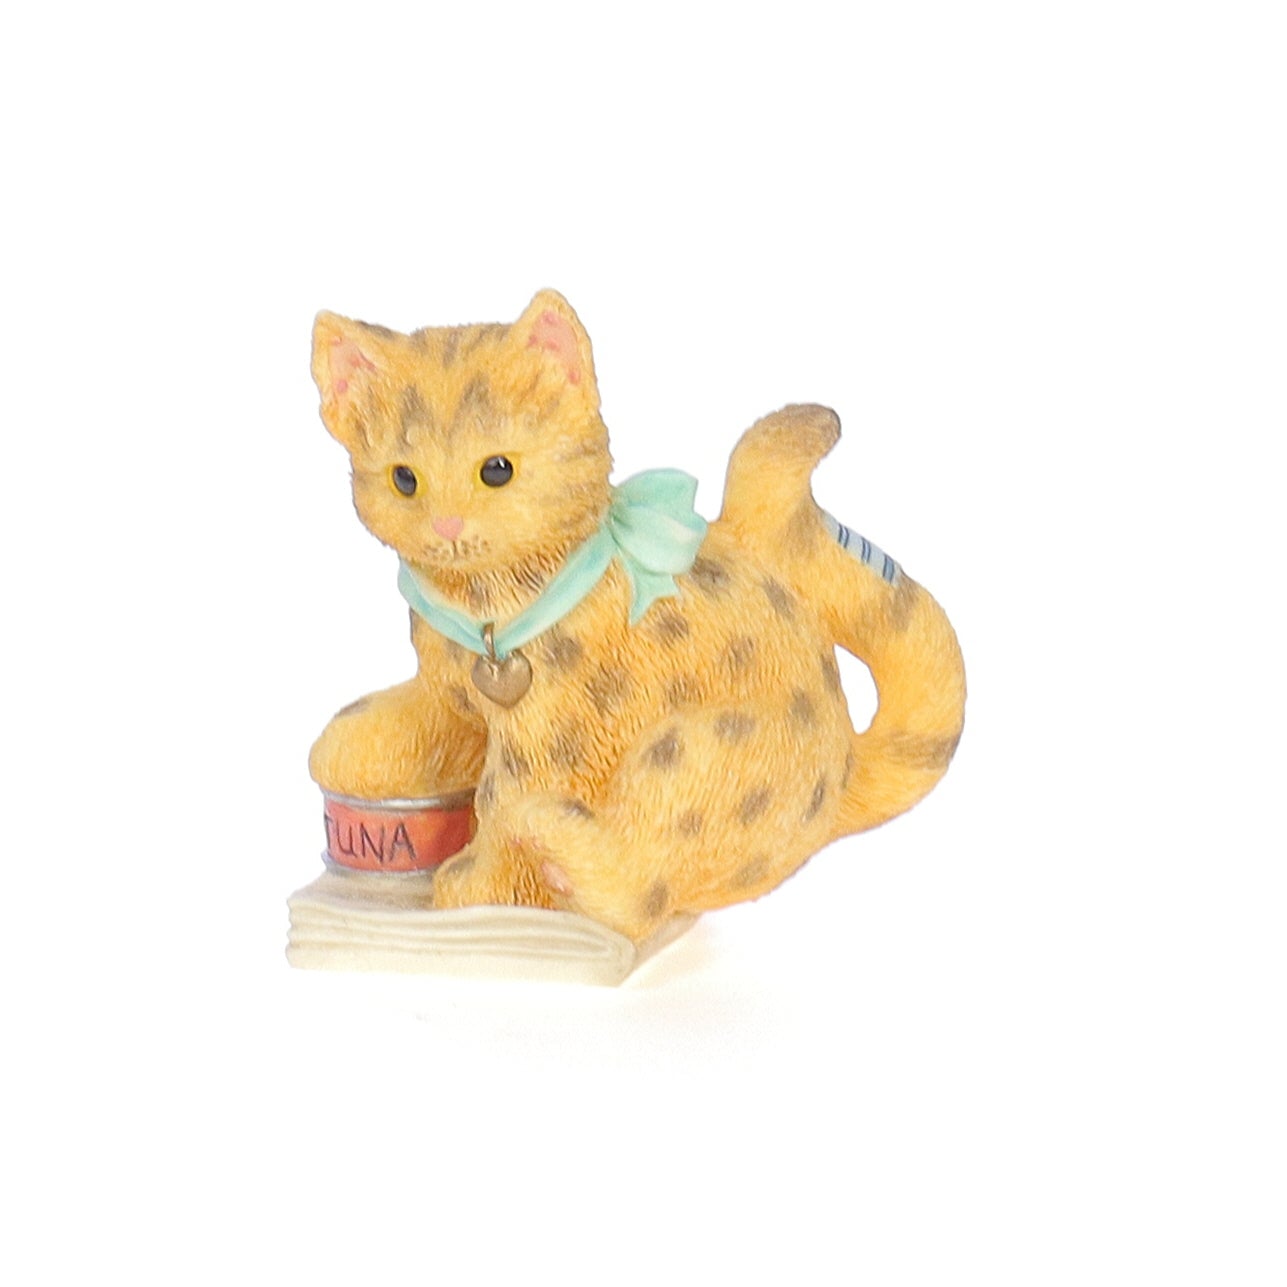 Calico_Kittens_Bengal_Kitten_Figurine_1997